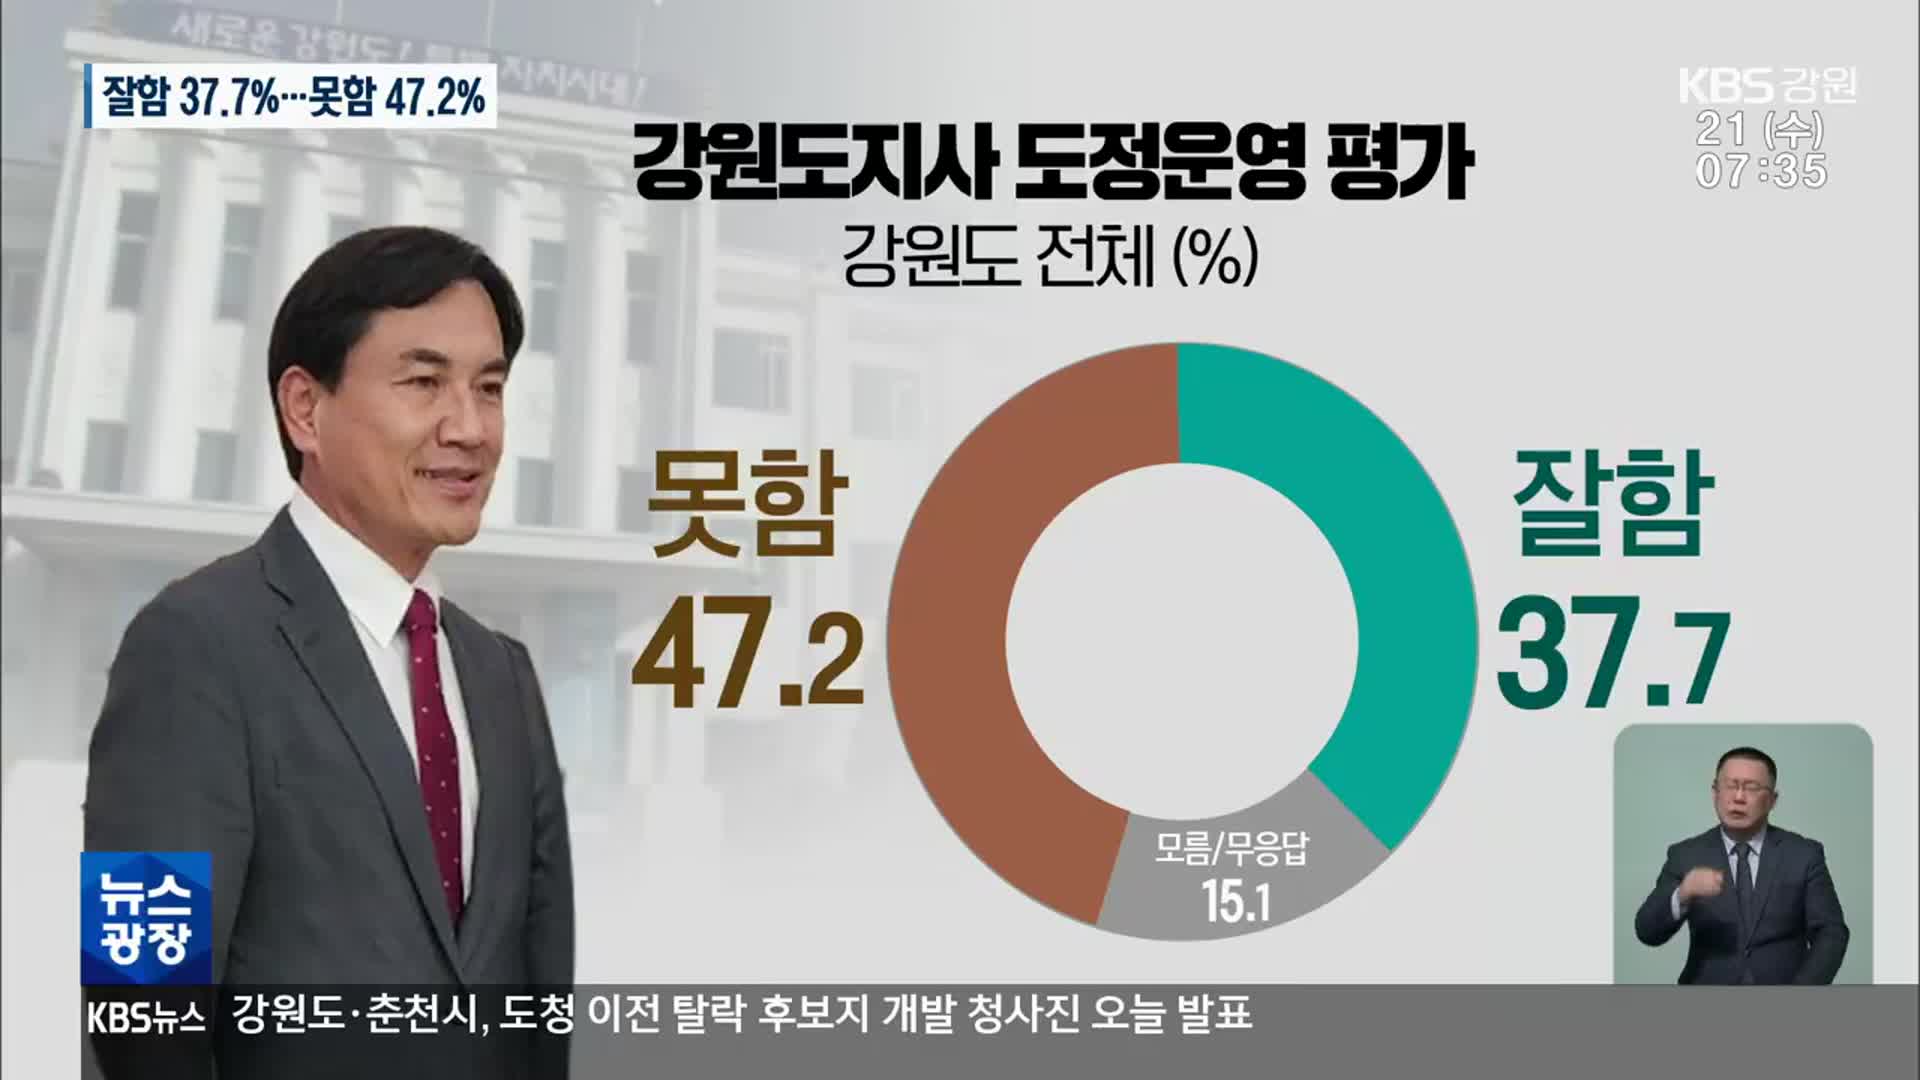 [강원 여론조사] 김진태 도정 평가, 절반 가까이가 “부정적”